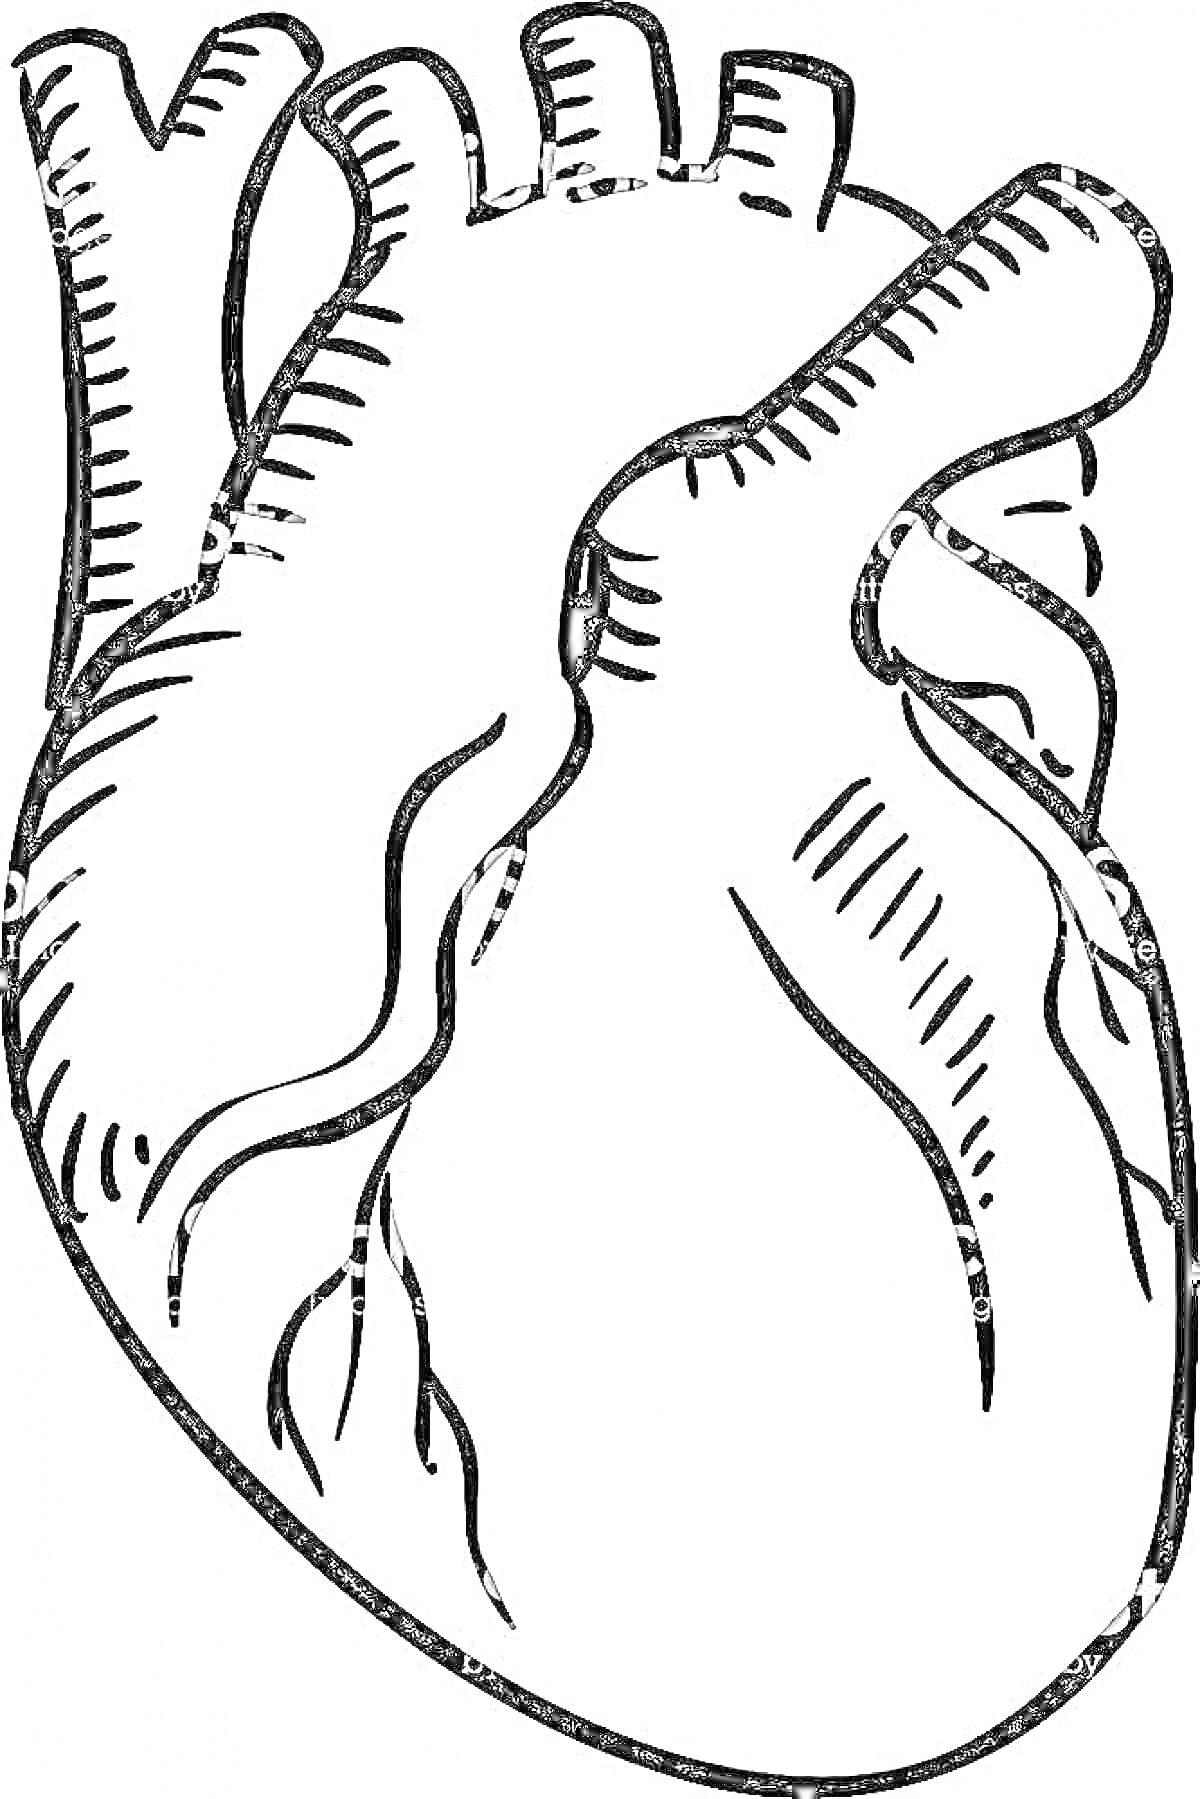 Анатомическое строение сердца - контурное изображение